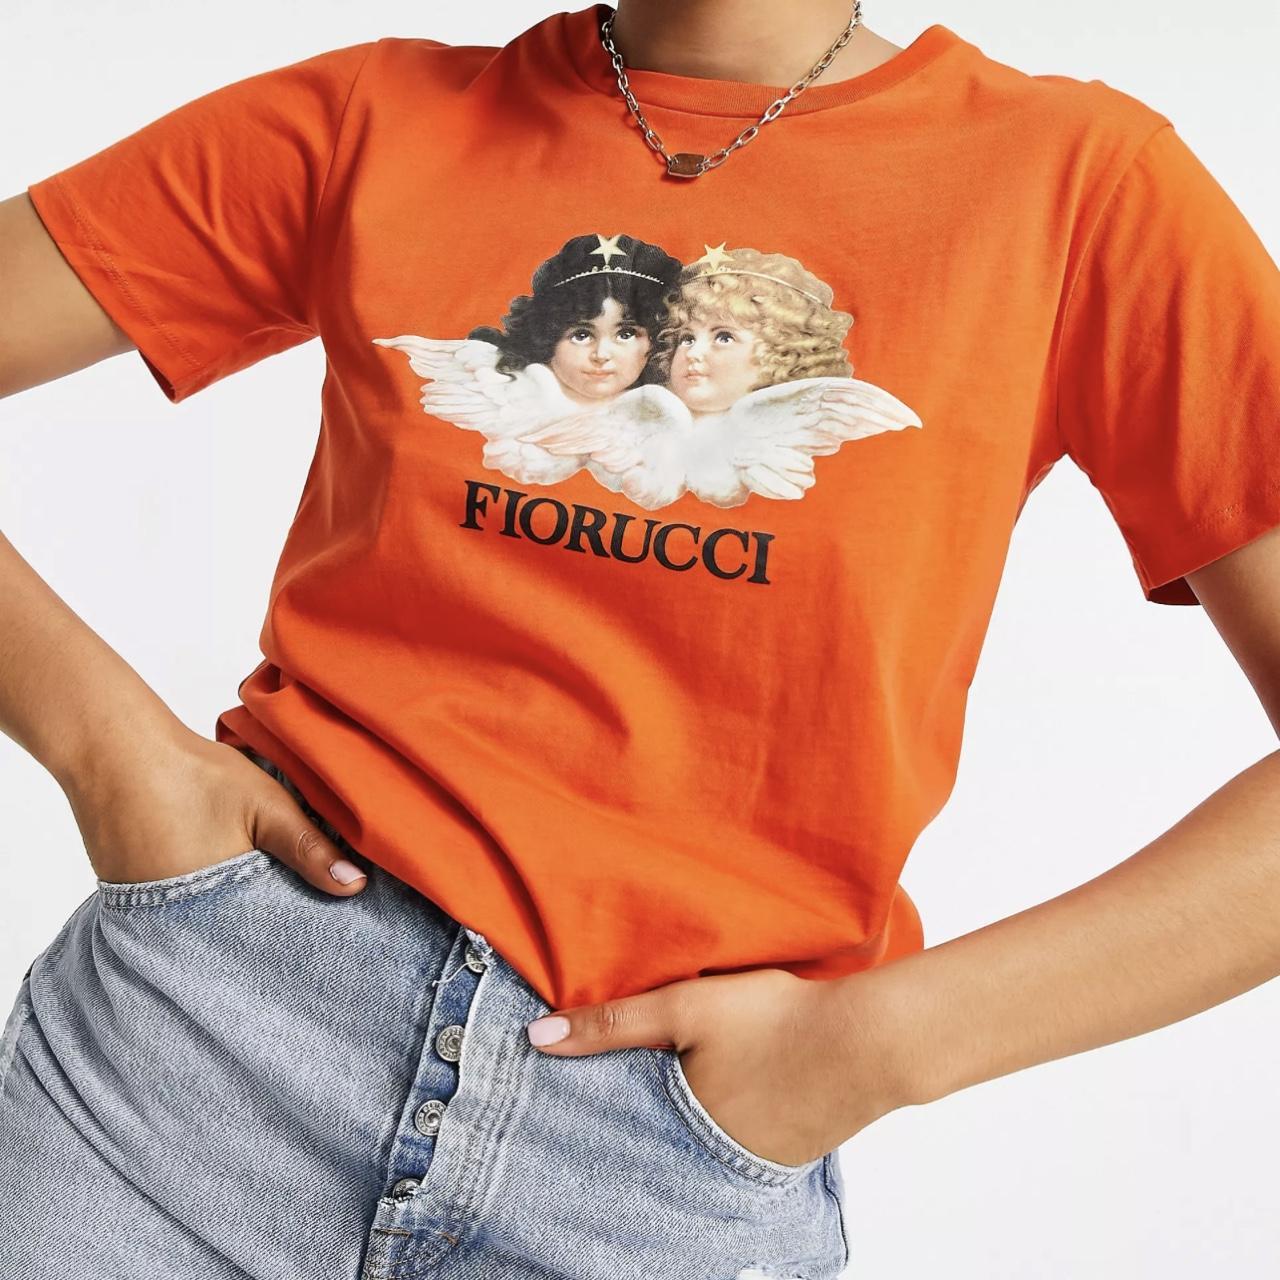 Fiorucci Women's Orange T-shirt